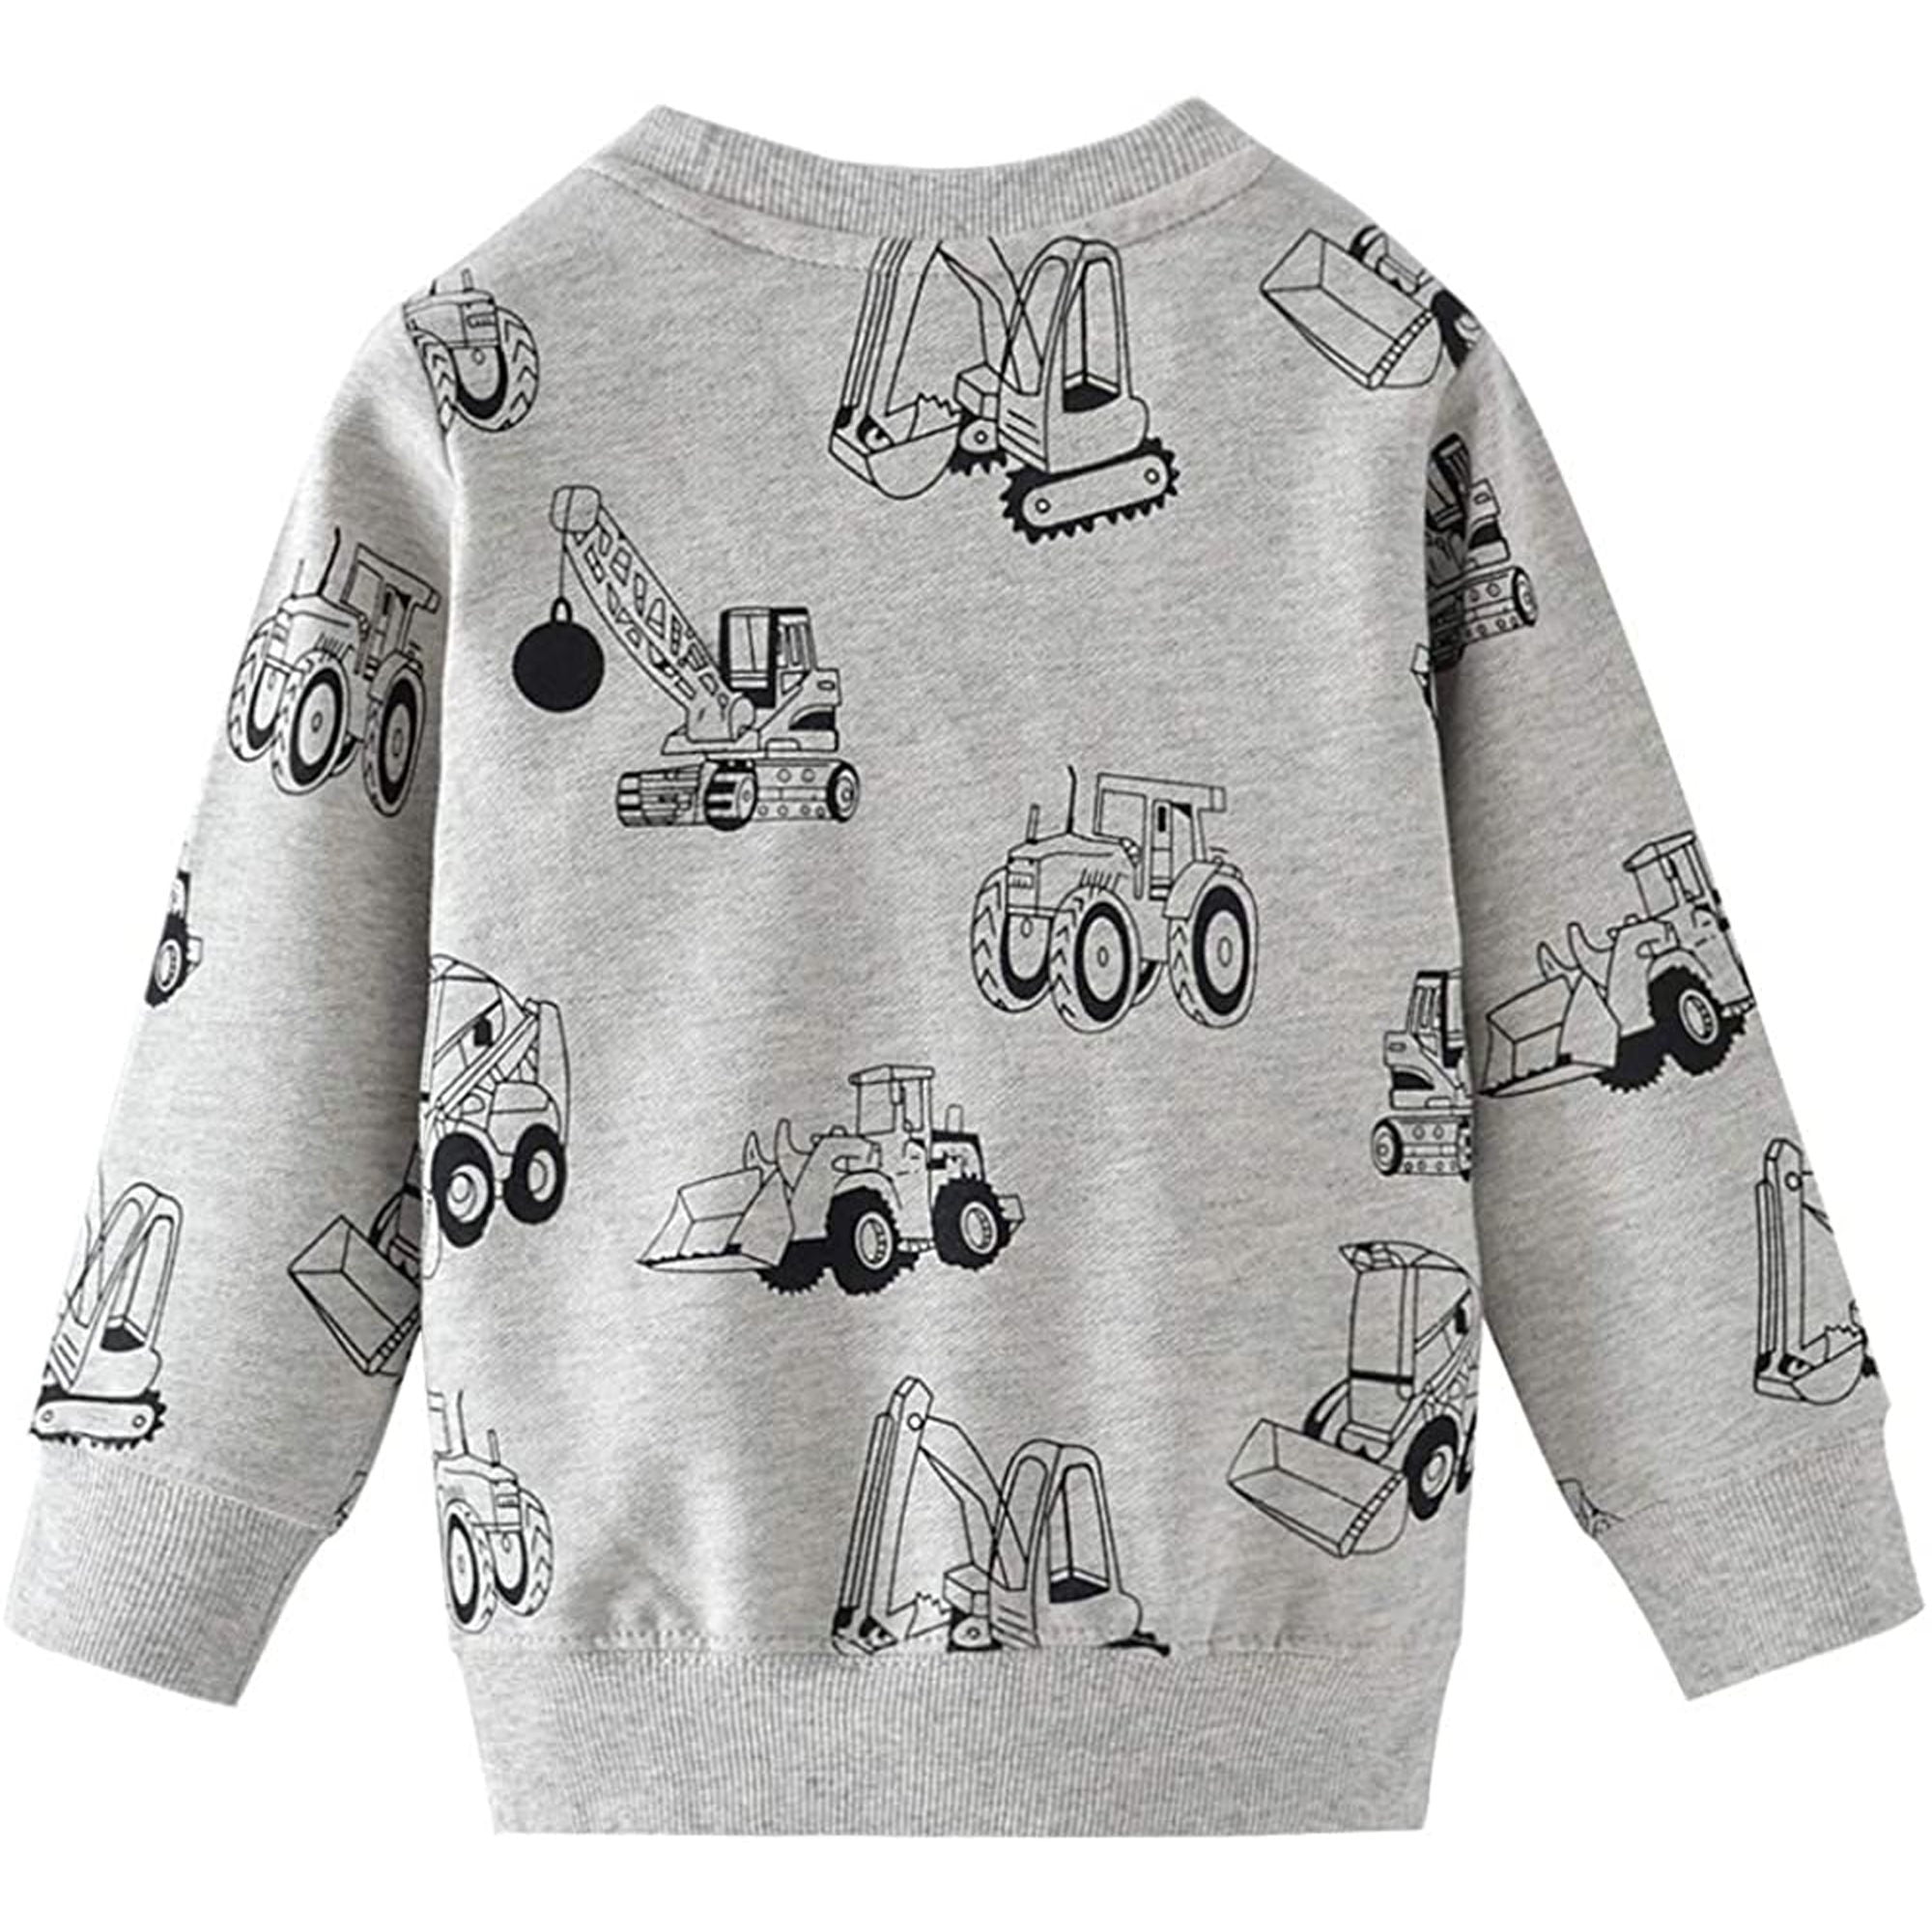 EULLA Childrens Dinosaur Cotton Sweater Jumper 92 98 104 110 116 122 